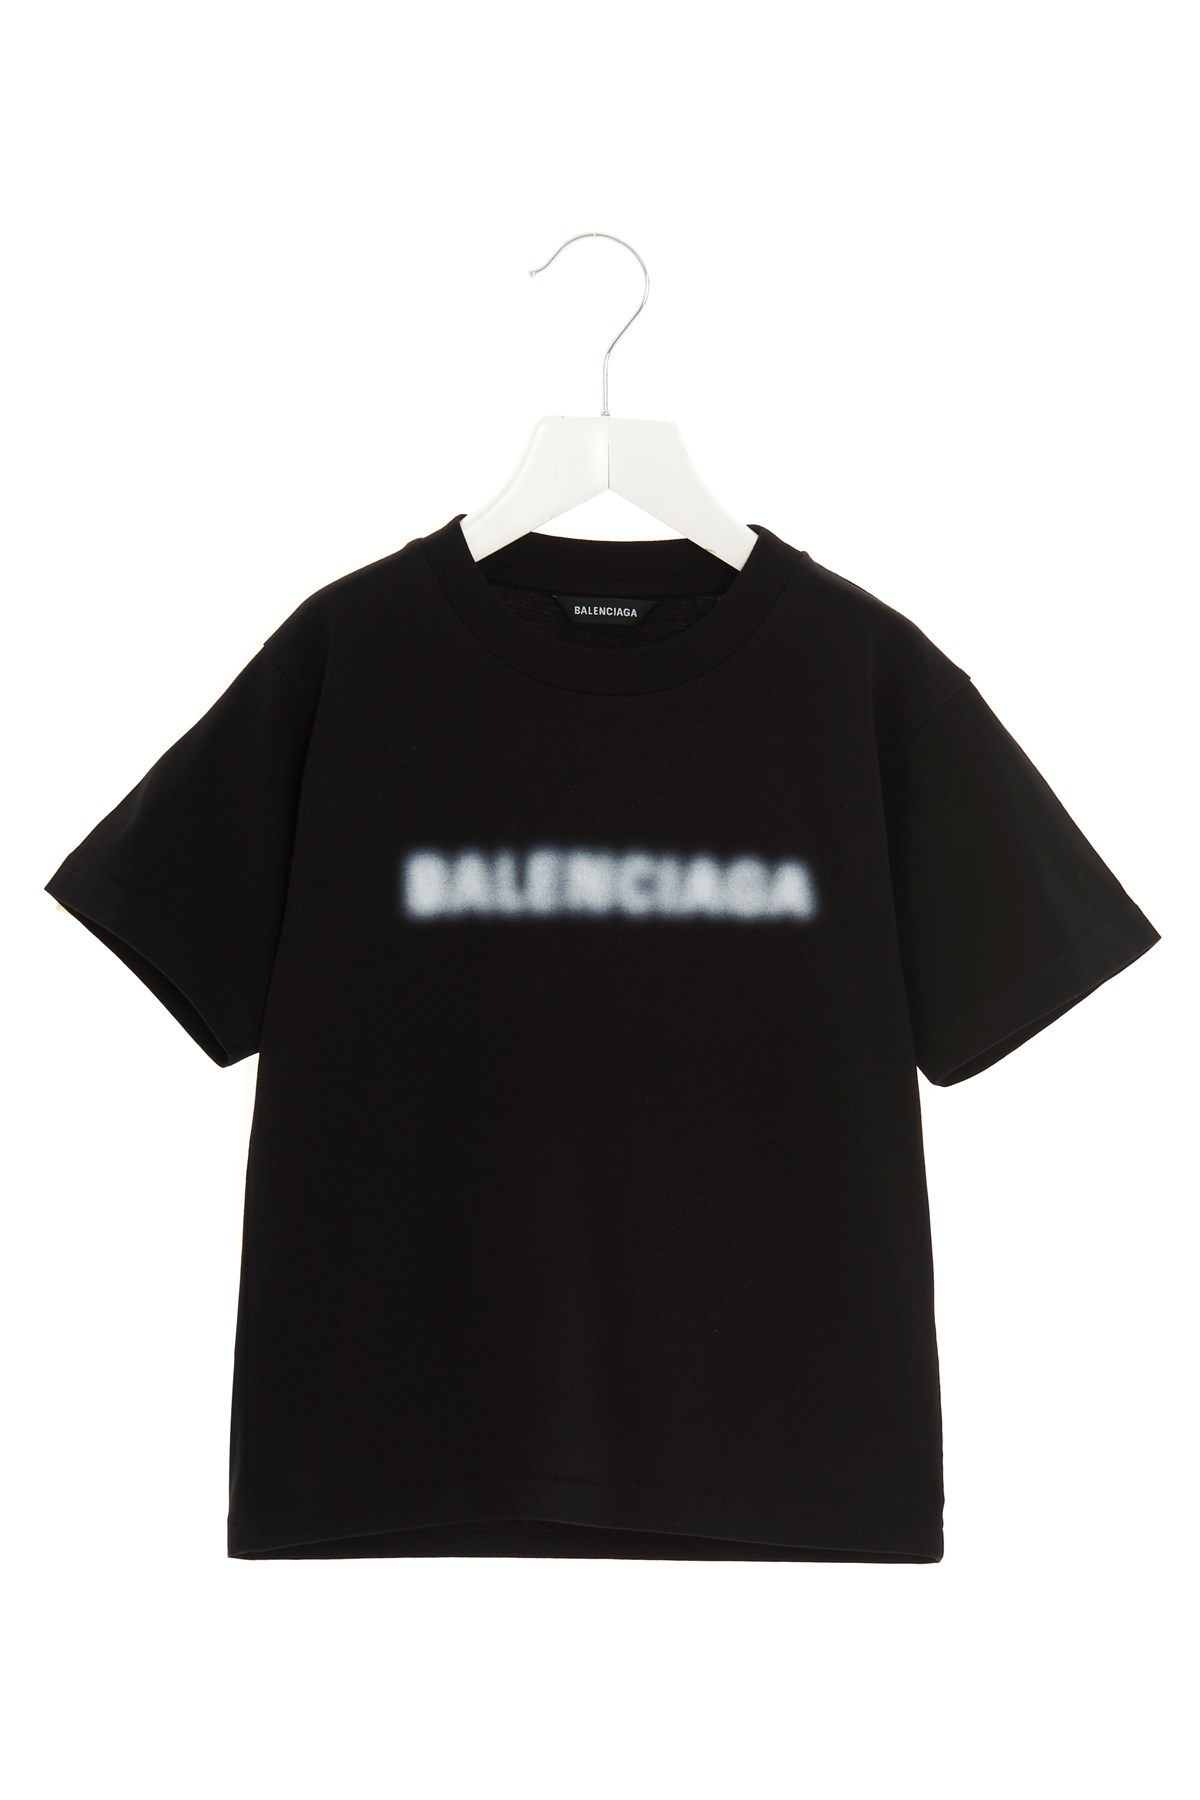 BALENCIAGA Blurry Logo T-Shirt